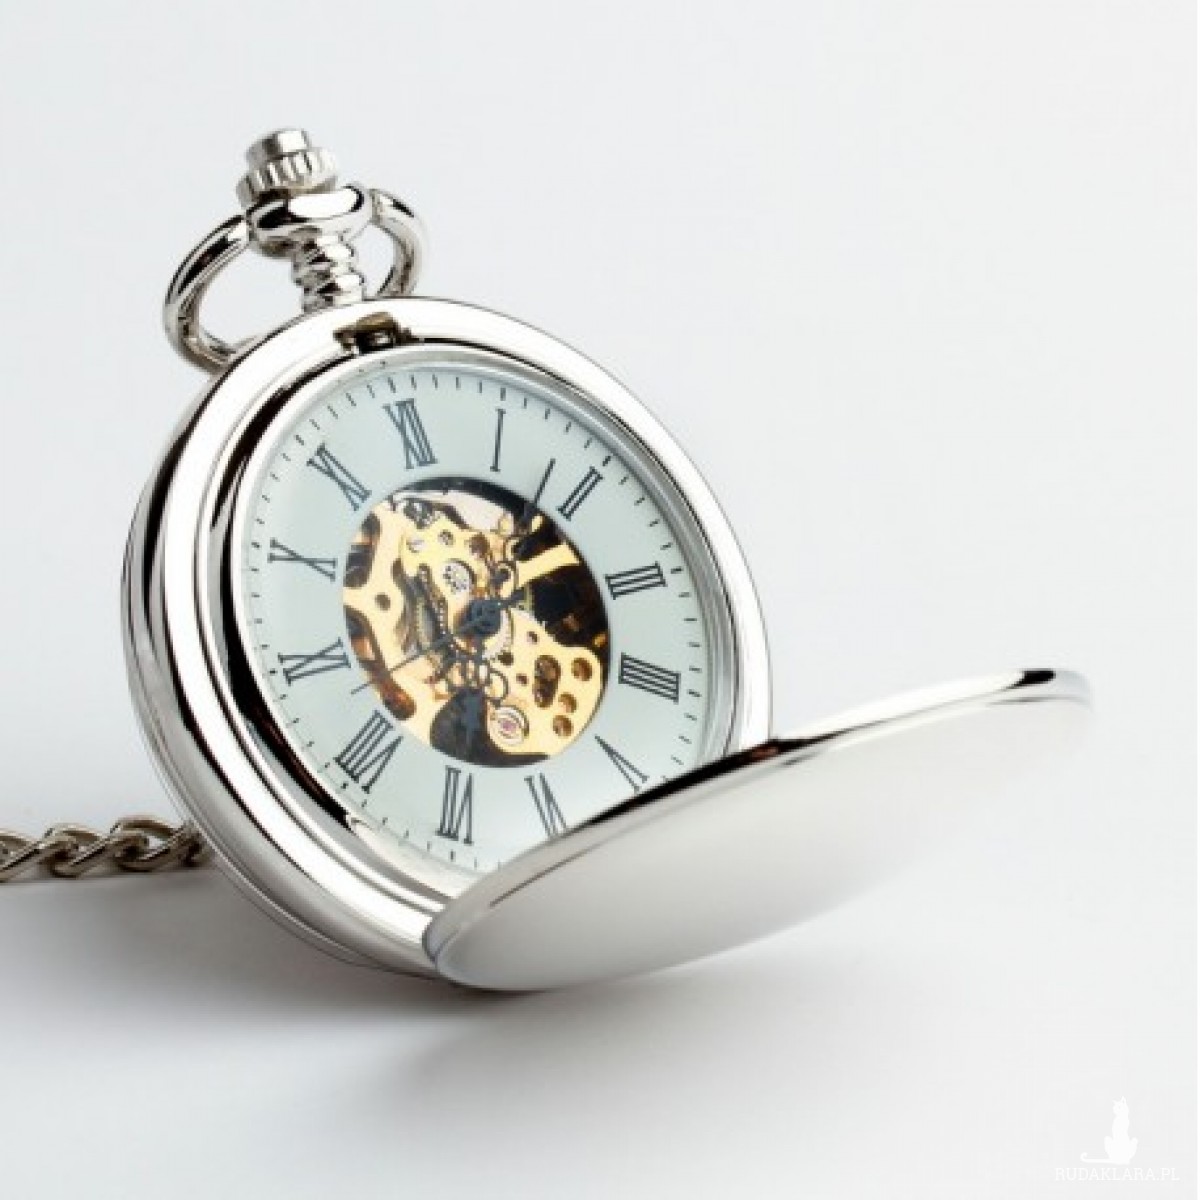 DWUSTRONNY (SILVER) - zegarek kieszonkowy, dewizka